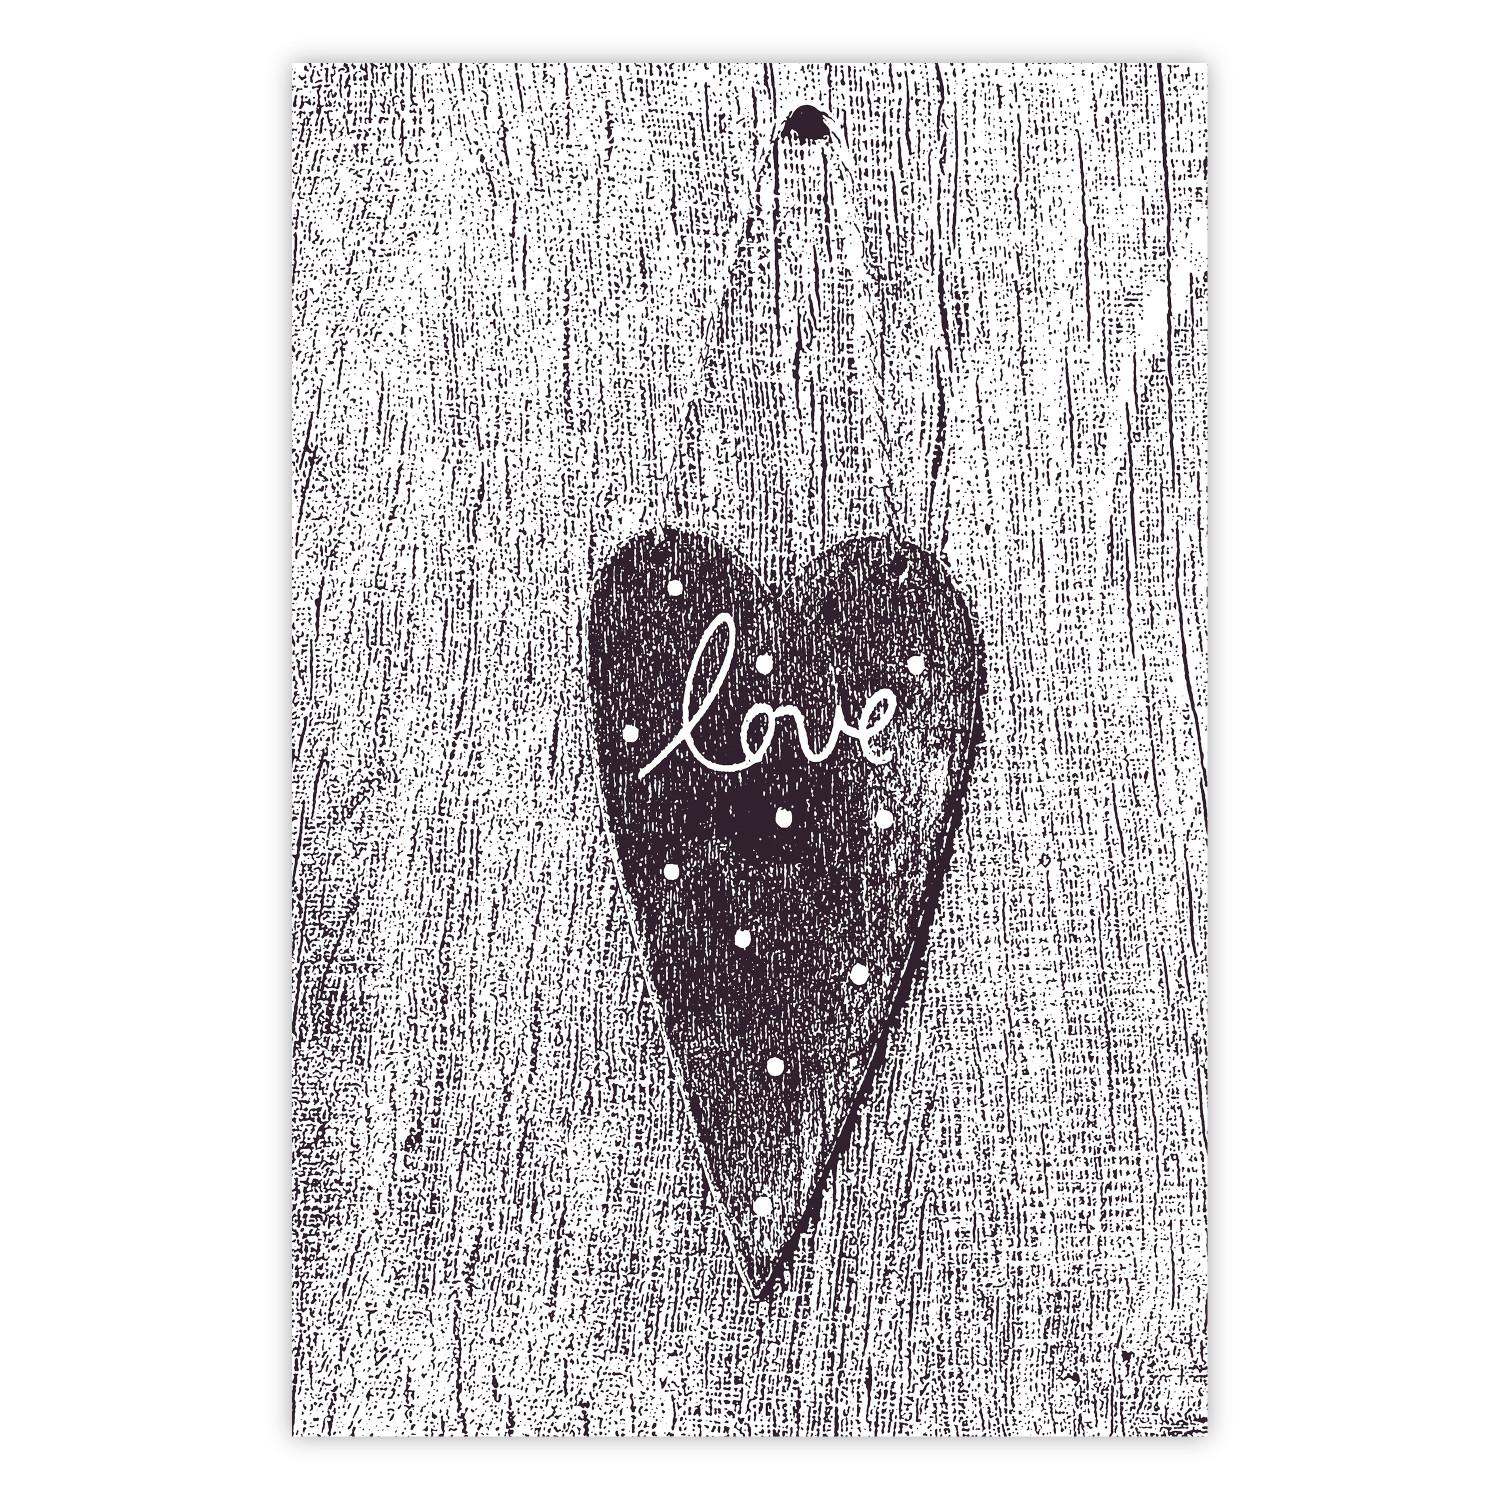 Póster Amor recortado - corazón con "amor" (Textura de madera)